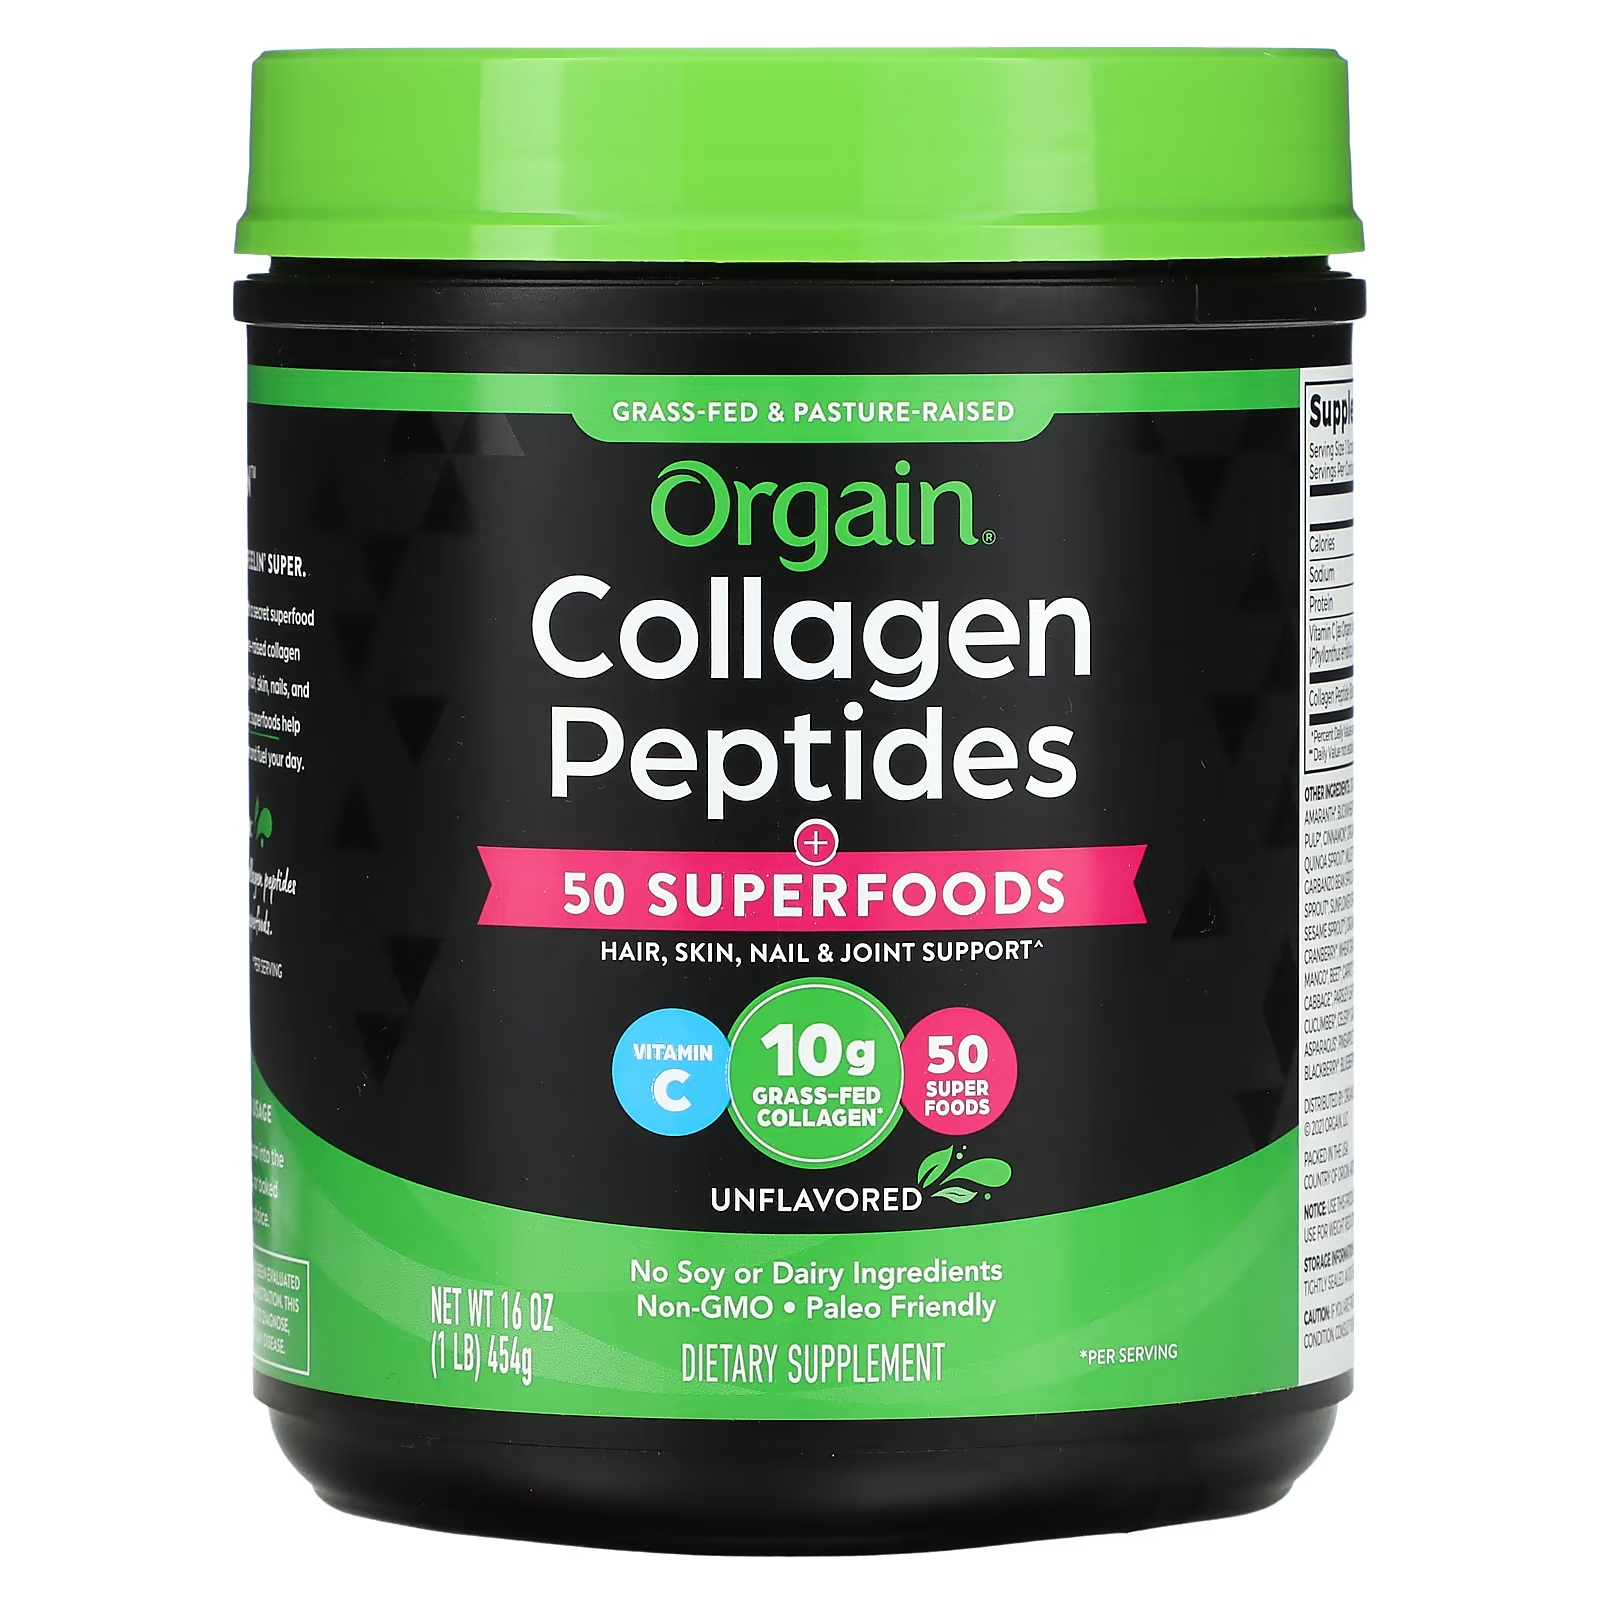 Orgain Collagen Peptides Plus 50 суперпродуктов без вкуса, 1 фунт (454 г) orgain коллагеновые пептиды плюс 50 суперфудов без добавок 454 г 1 фунт